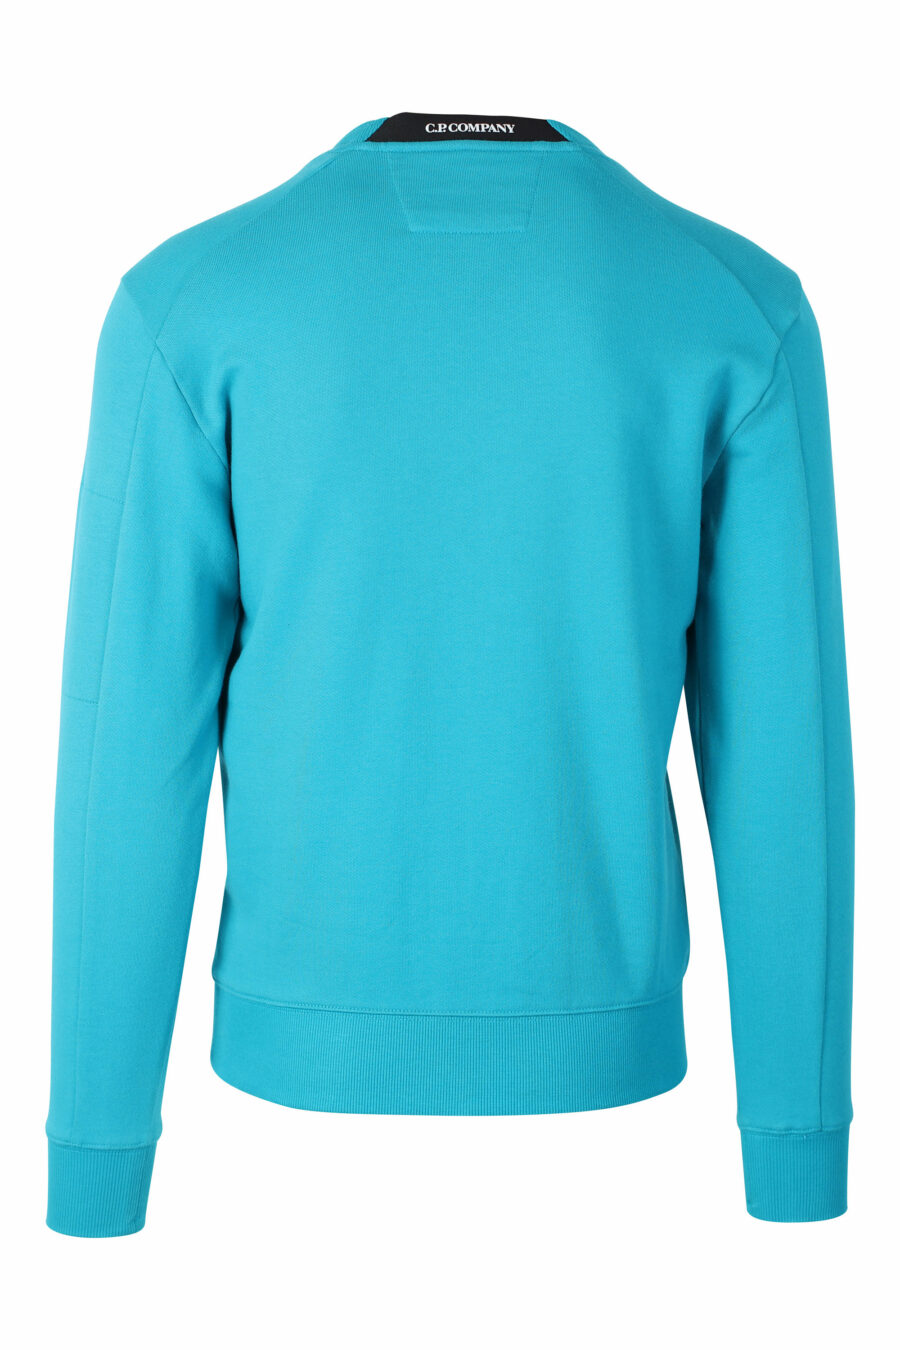 Sweat-shirt turquoise avec mini-logo circulaire sur le côté - IMG 2394